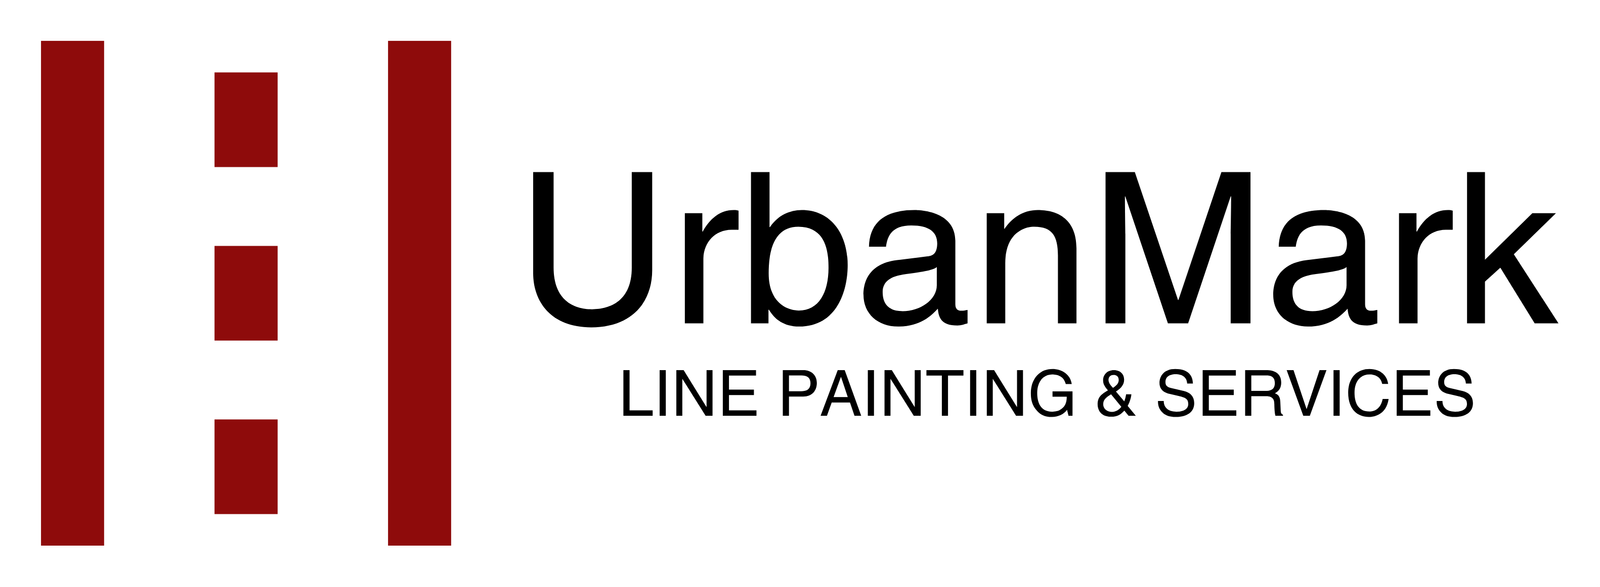 UrbanMark